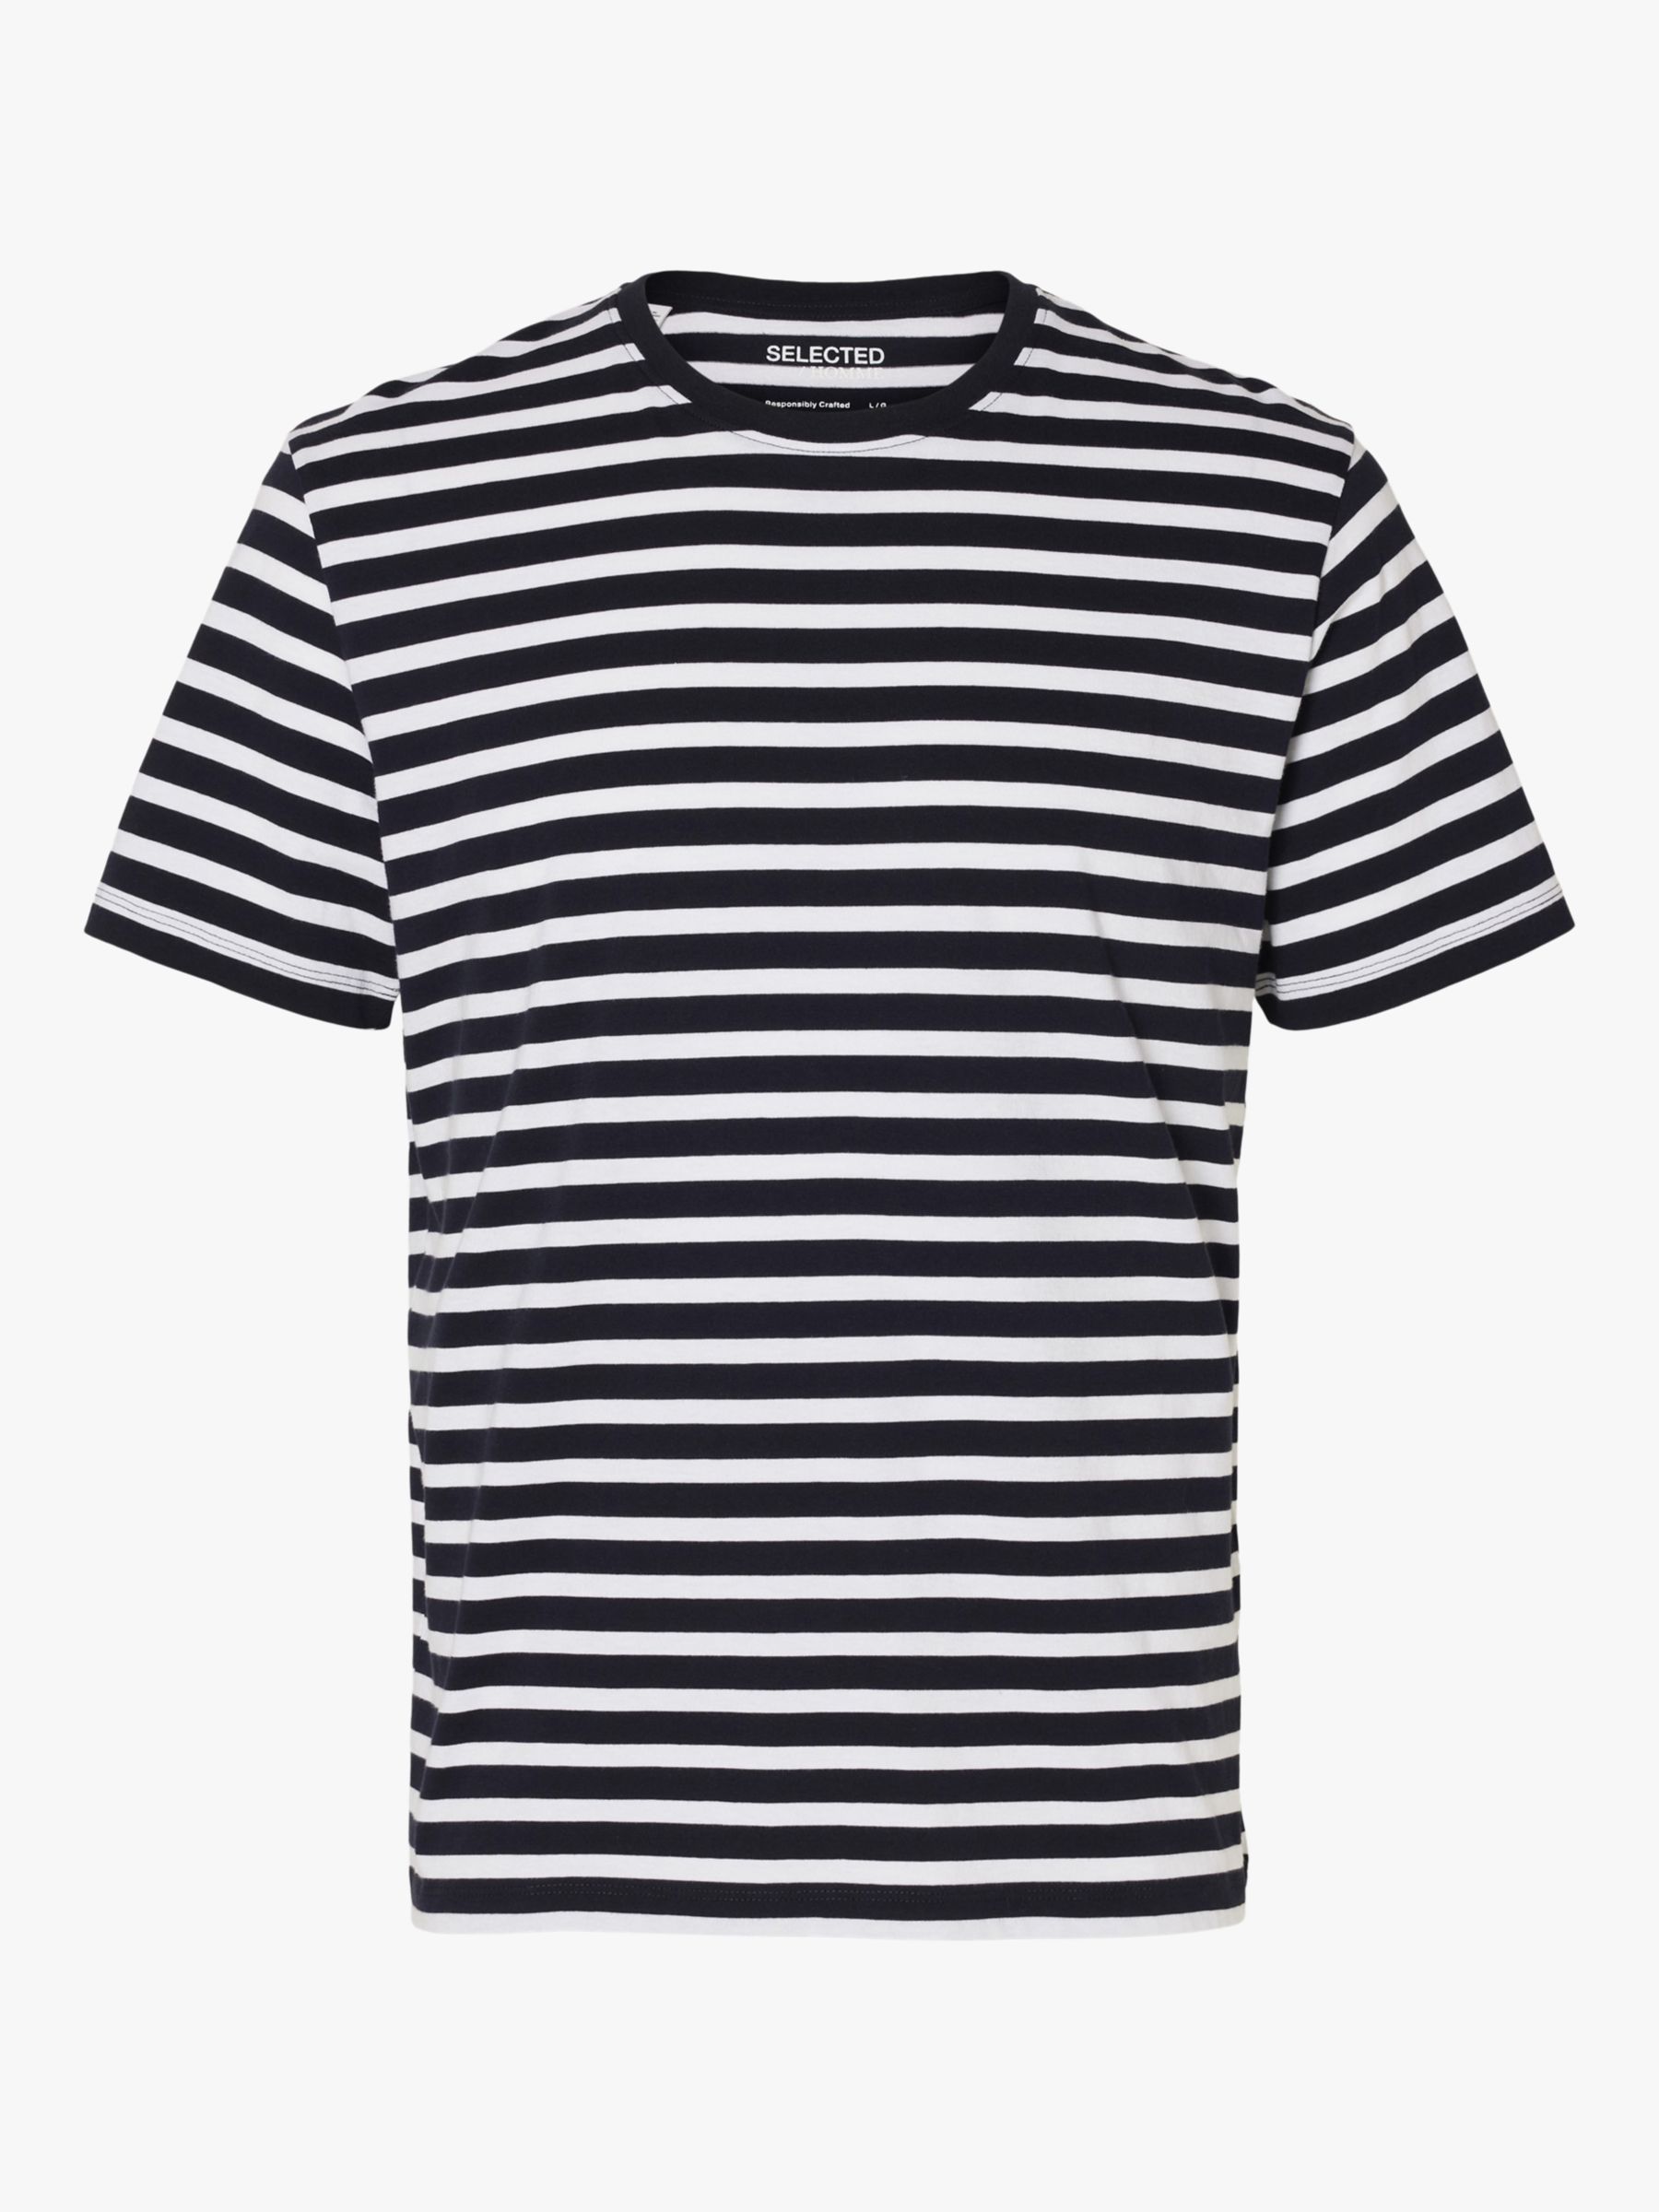 SELECTED HOMME Stripe Organic Cotton T-Shirt, Navy Blazer at John Lewis ...